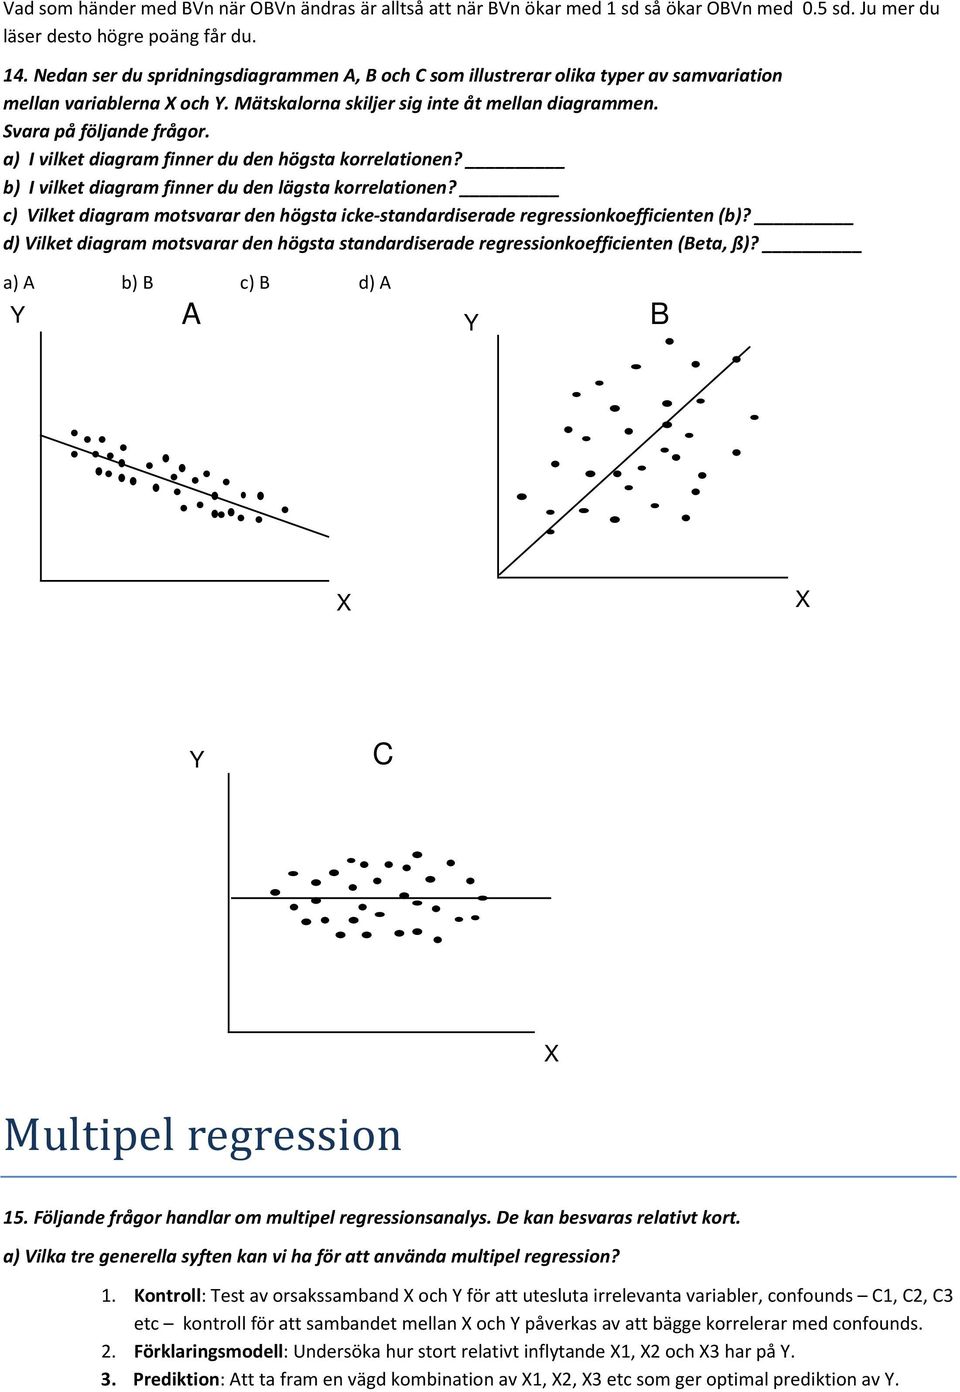 a) I vilket diagram finner du den högsta korrelationen? b) I vilket diagram finner du den lägsta korrelationen? c) Vilket diagram motsvarar den högsta icke-standardiserade regressionkoefficienten (b)?